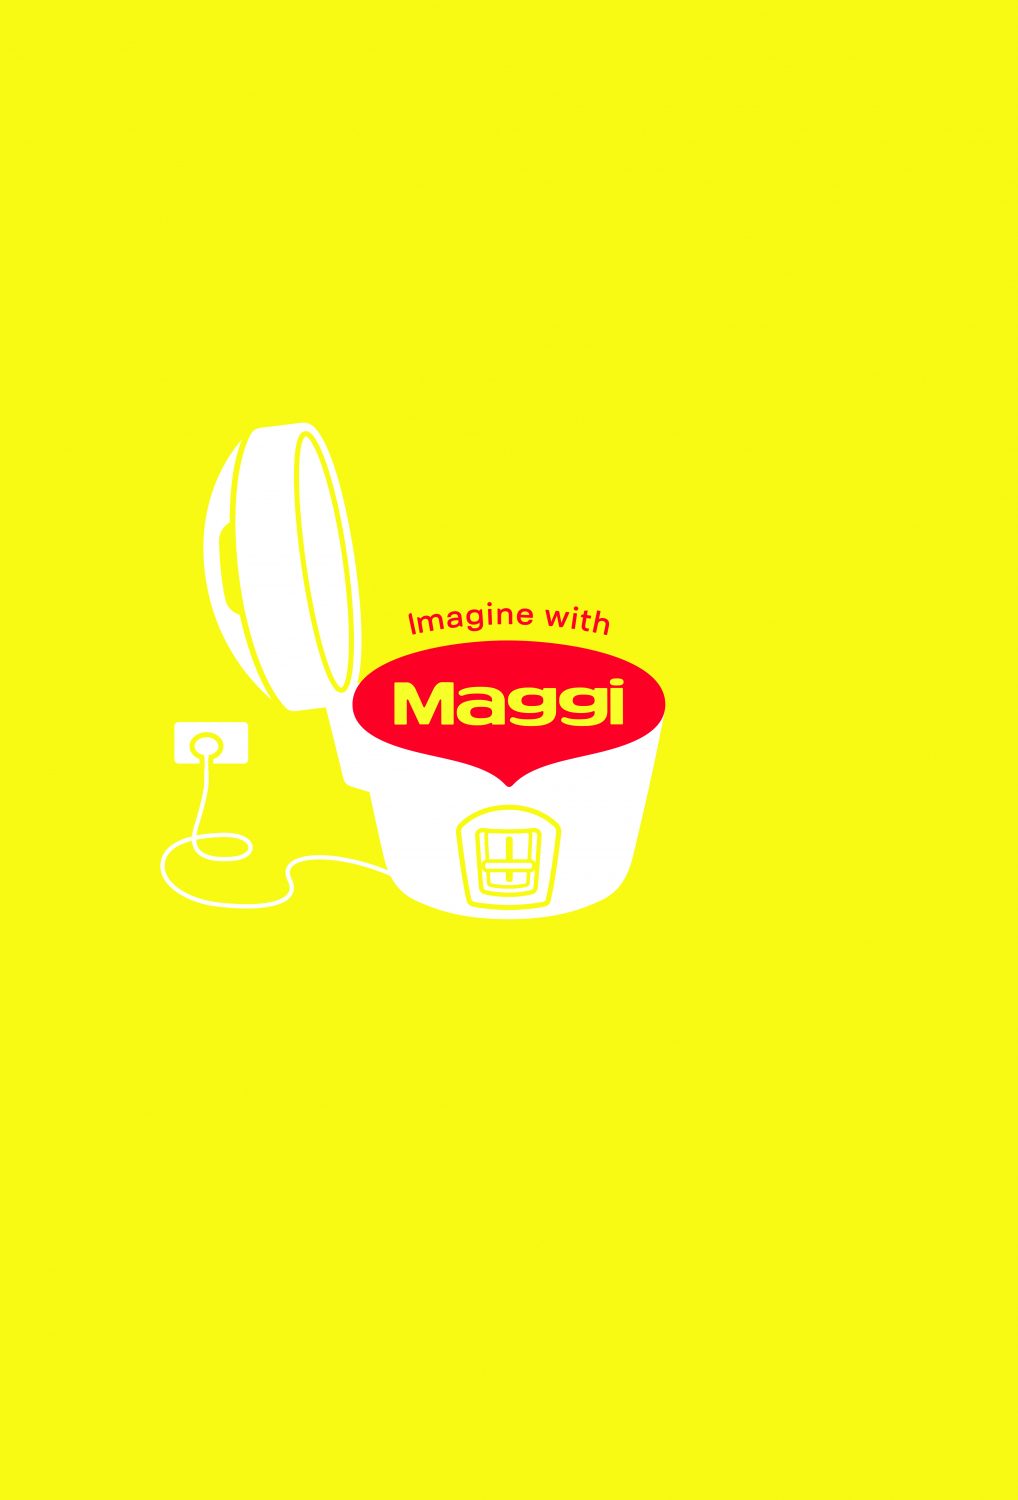 2021-Nestle Maggi-Imagine With Maggi-Poster 01-Publicis Brazil-jpg